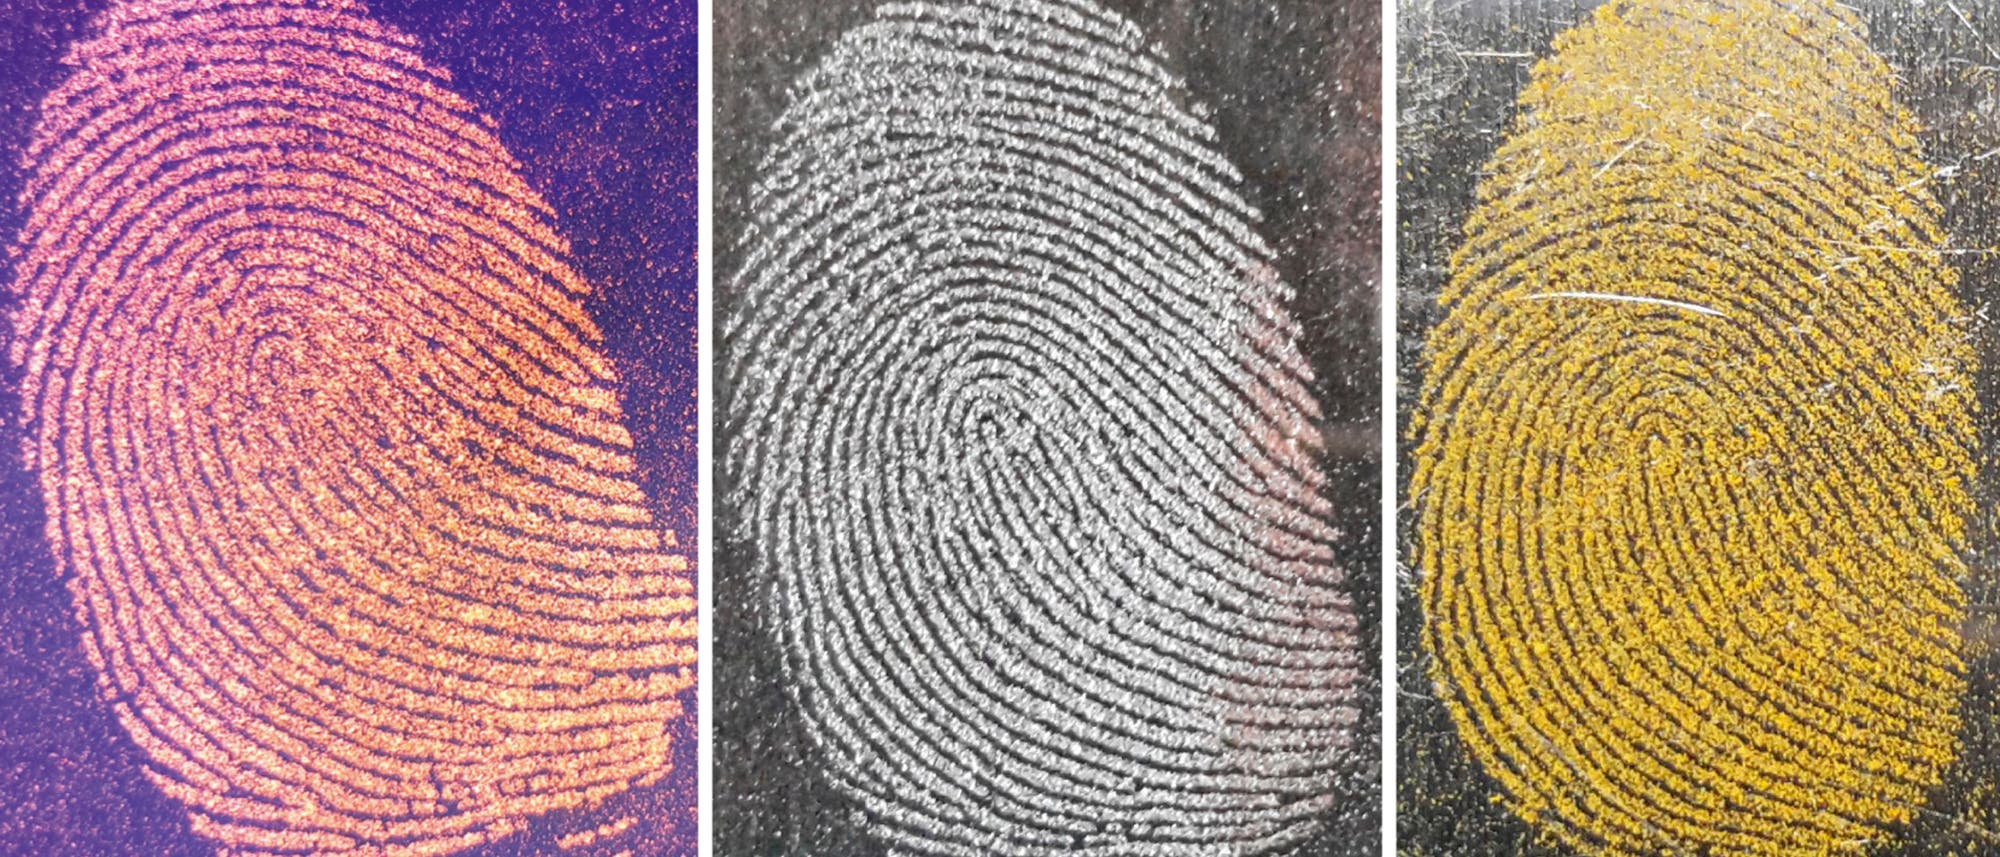 Fingerabdrücke weisen ein individuelles Muster auf, das sich mit Hilfe von färbenden Pulvern visualisieren lässt. Von links nach rechts: Orangenes Holi-Pulver (UV-beleuchtet) auf einer Spiegelrückseite, Eisenpulver auf Glas und Kurkuma auf Aluminium.